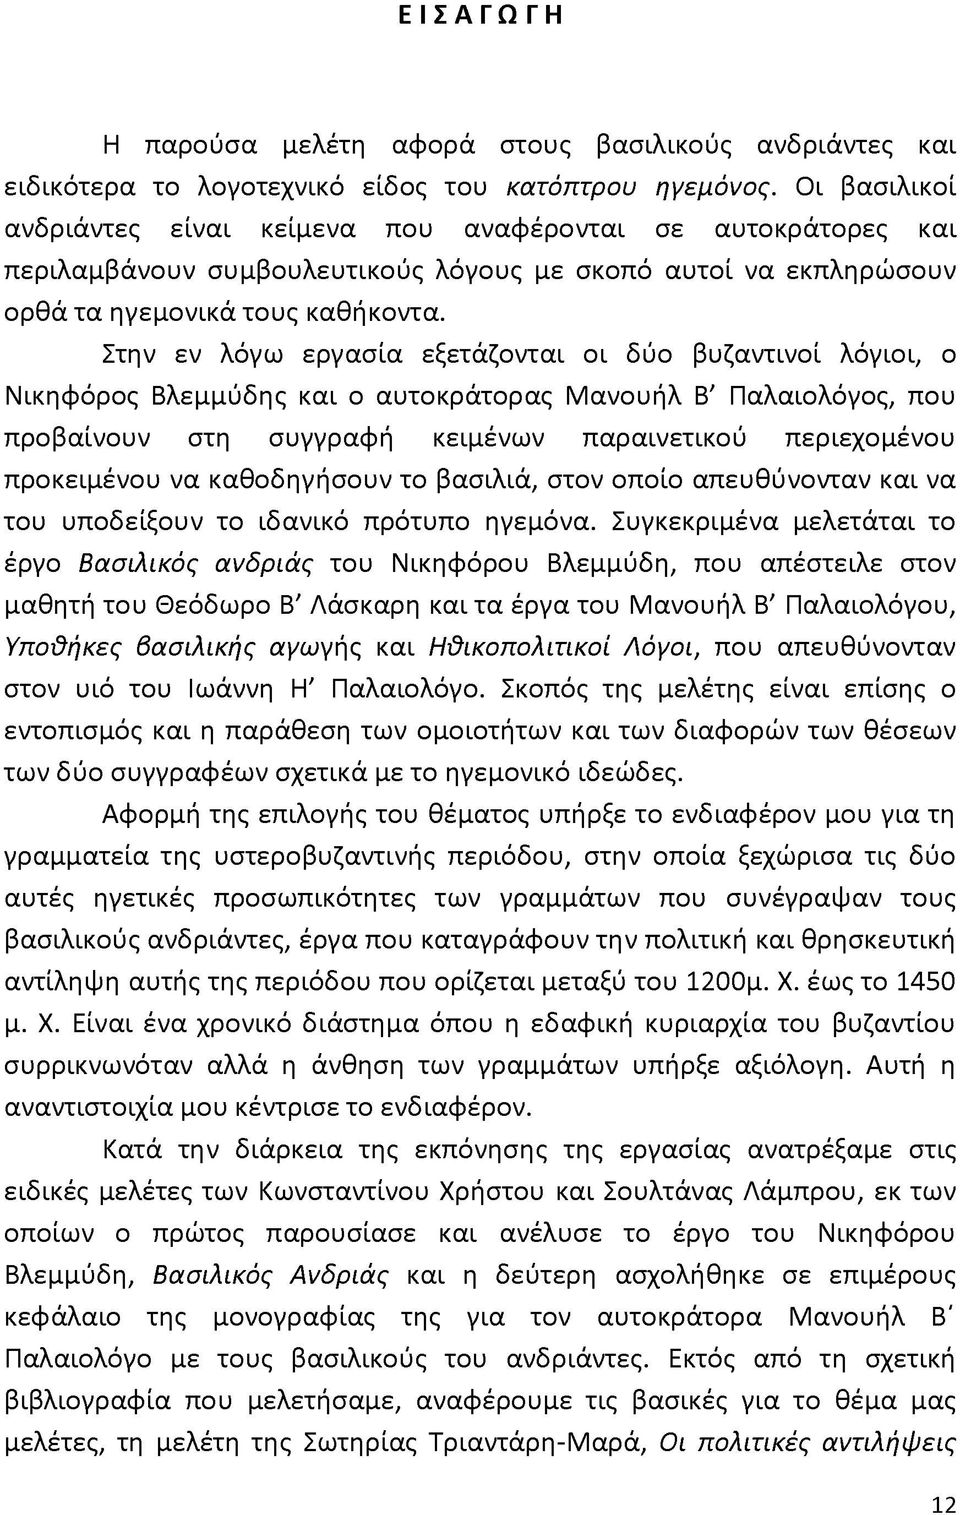 Στην εν λόγω εργασία εξετάζονται οι δύο βυζαντινοί λόγιοι, ο Νικηφόρος Βλεμμύδης και ο αυτοκράτορας Μανουήλ Β' Παλαιολόγος, που προβαίνουν στη συγγραφή κειμένων παραινετικού περιεχομένου προκειμένου